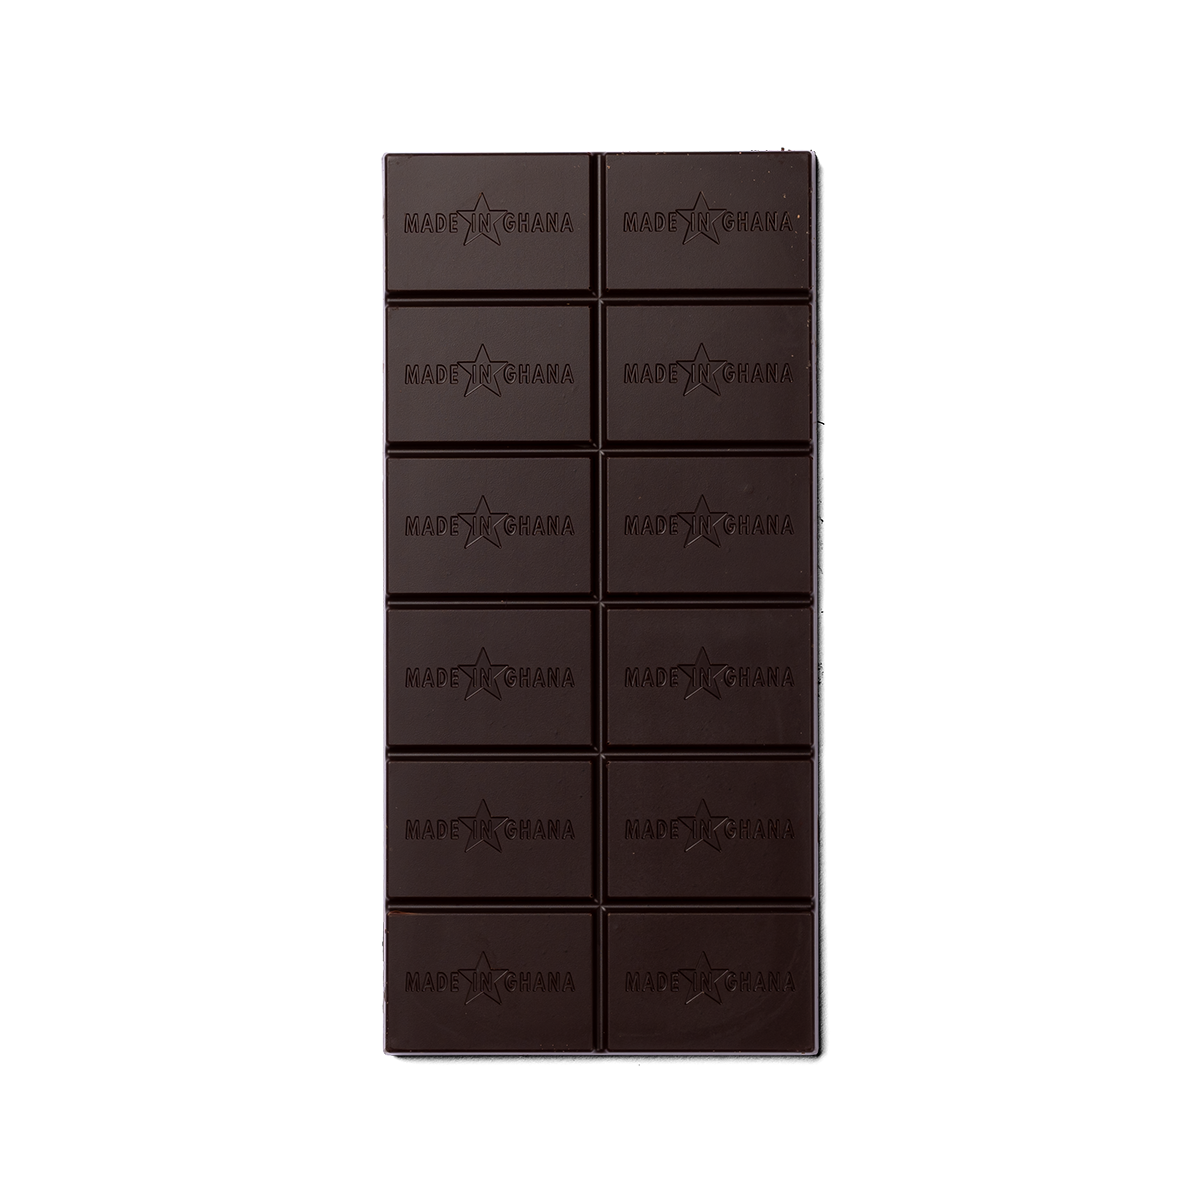 92% organic dark chocolate